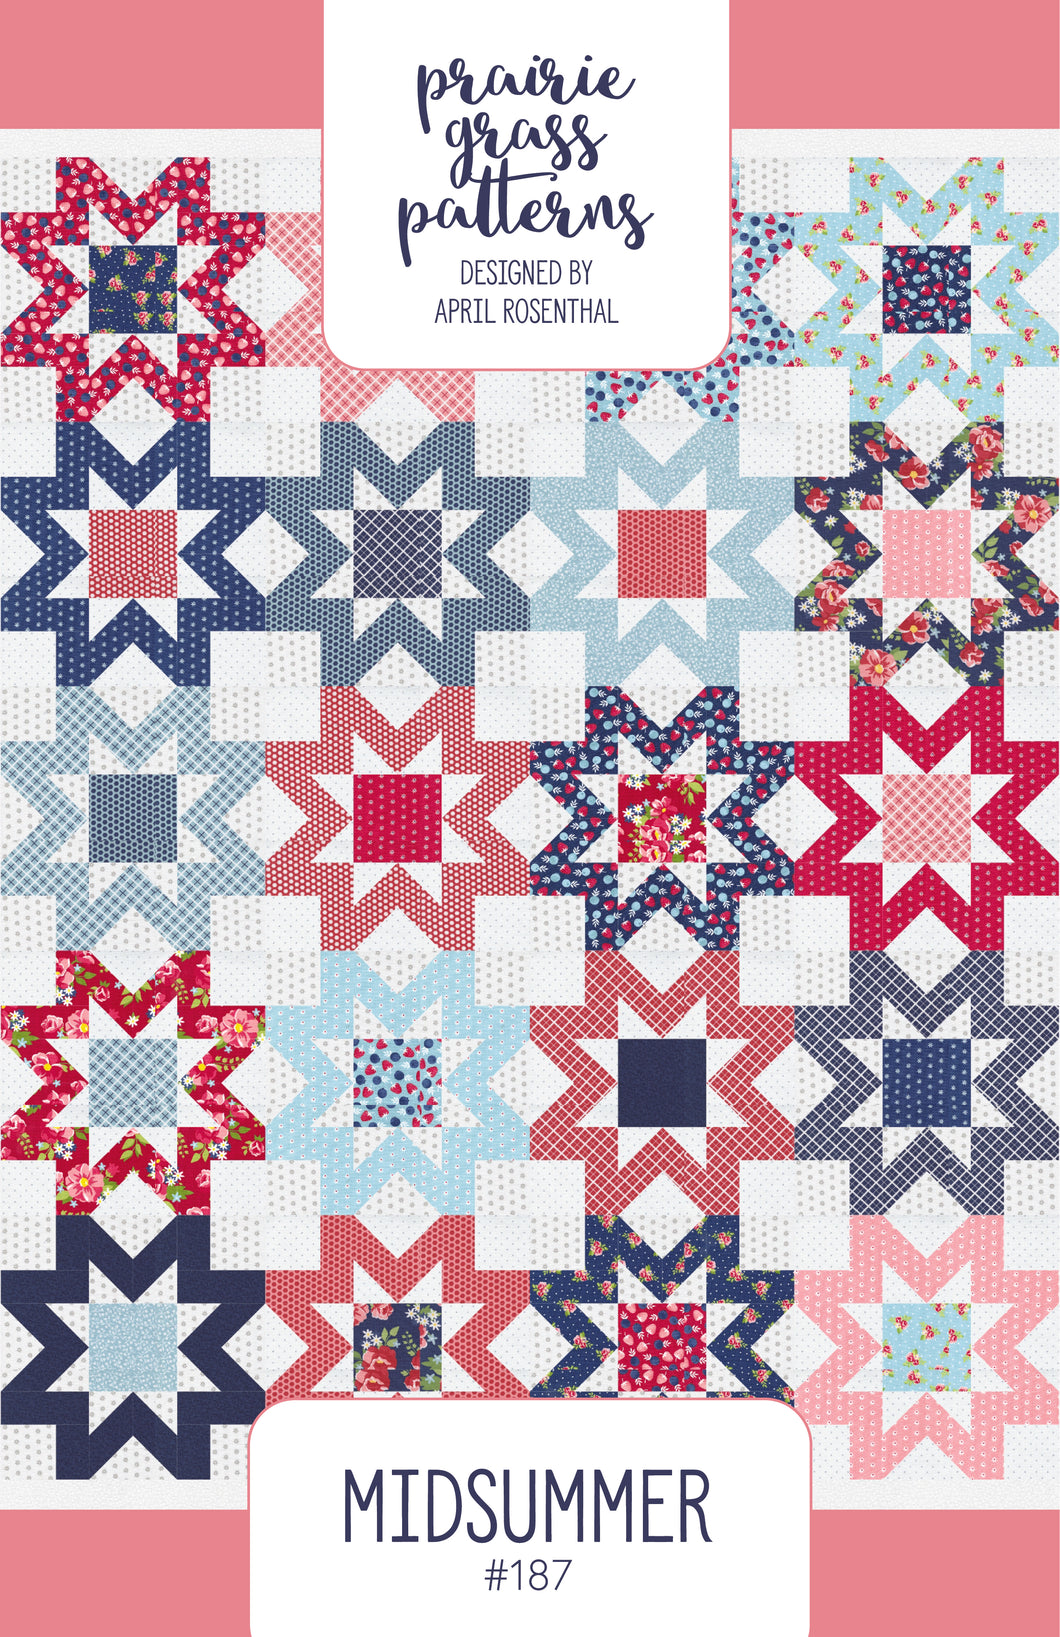 #187 - Midsummer Quilt Paper Pattern